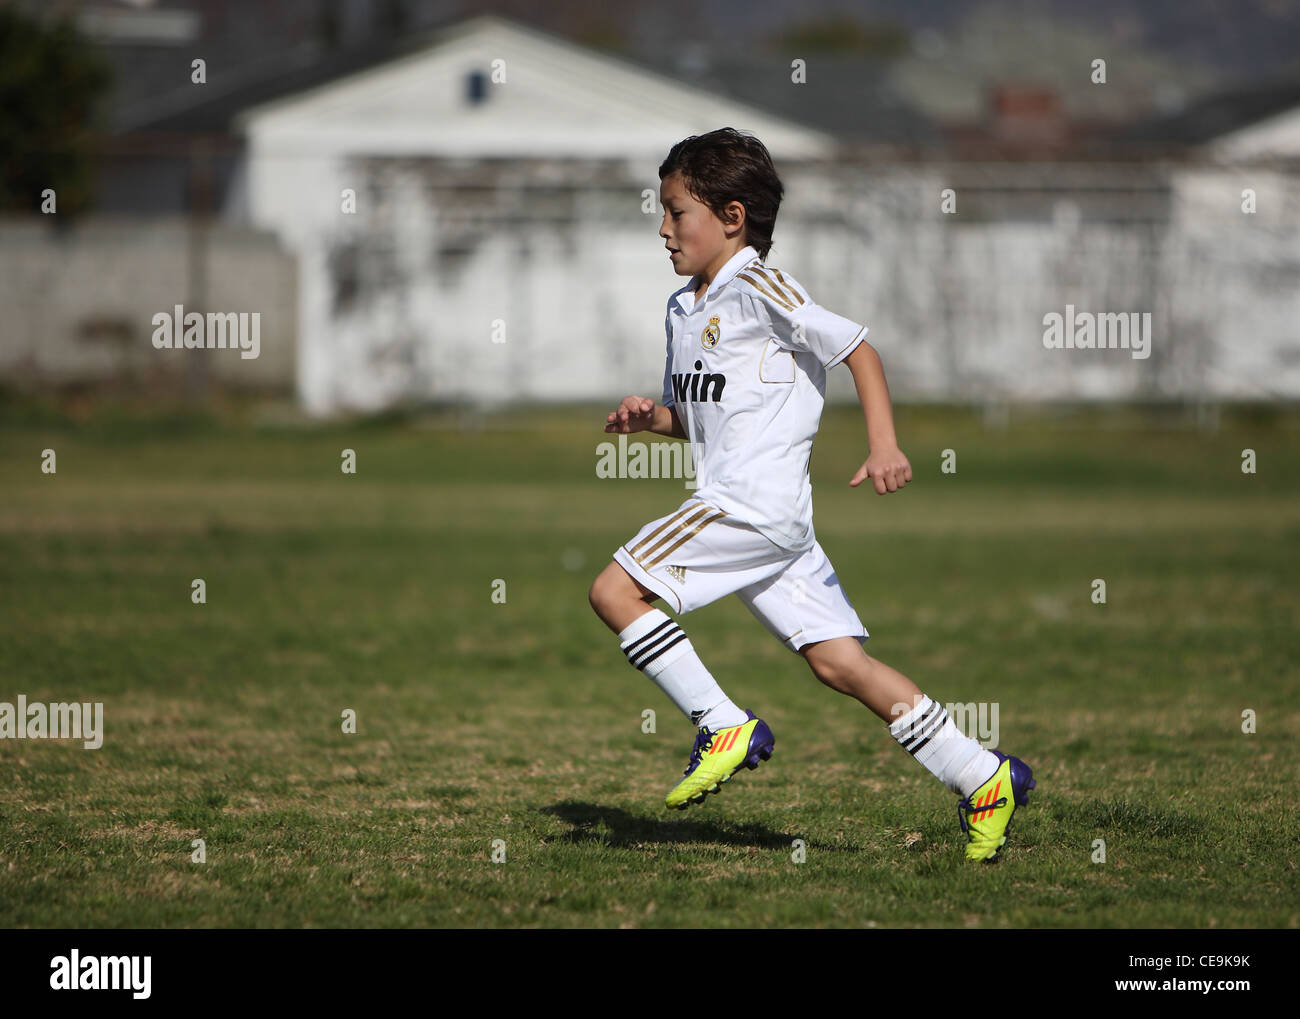 Kleiner Junge gekleidet in Real Madrid einheitliche Vorgehensweisen Fußball für eine Jugendmannschaft in Südkalifornien.  Fußball wird immer beliebter. Stockfoto